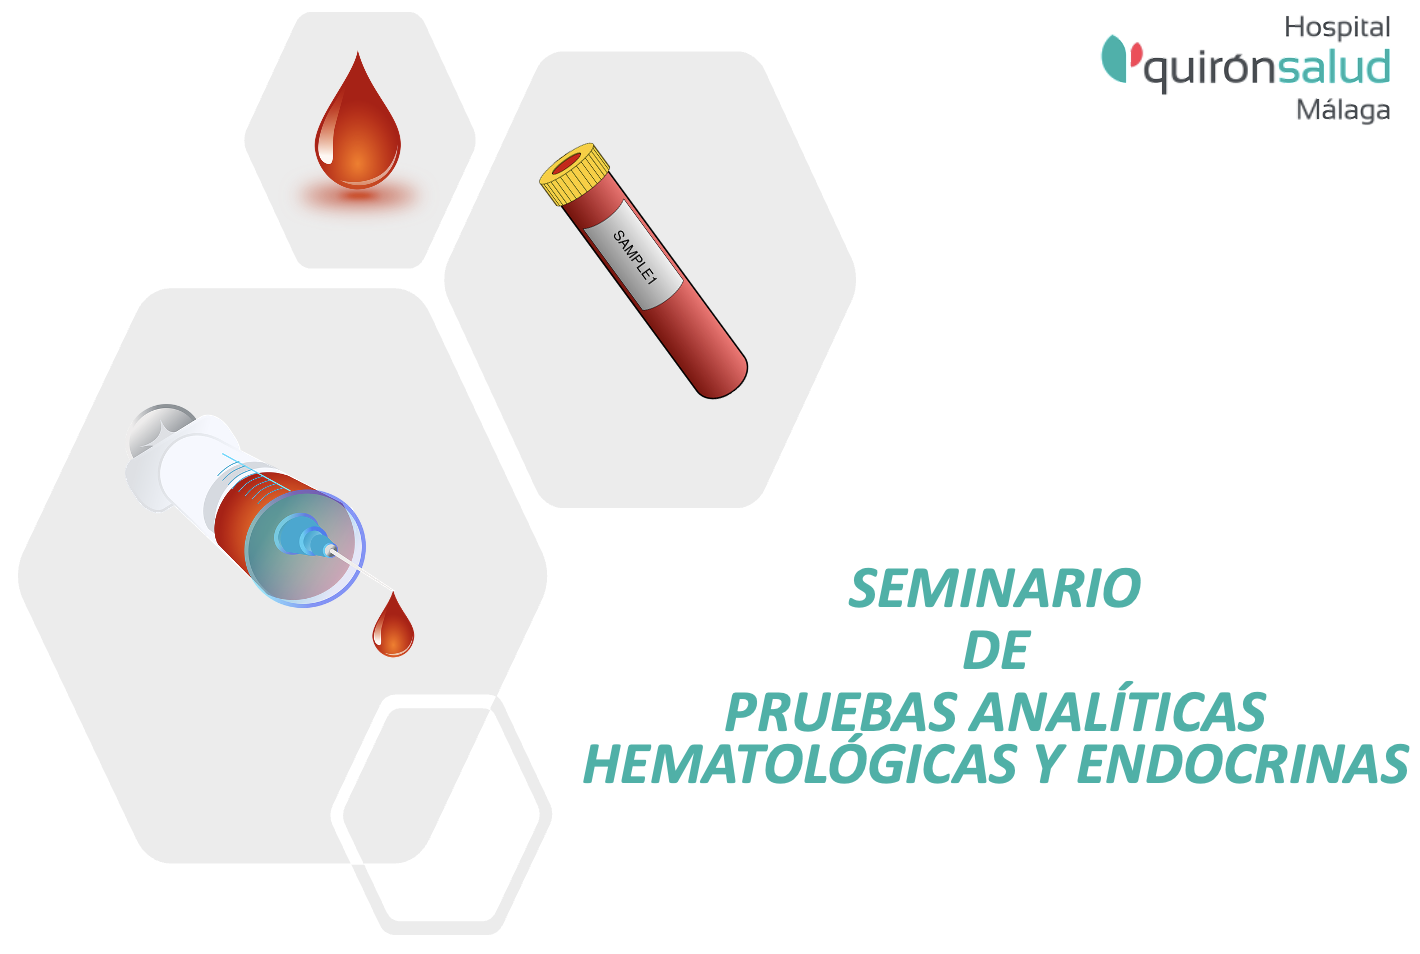 Seminario de toma de muestras para pruebas analíticas, hematológicas y bioquímicas